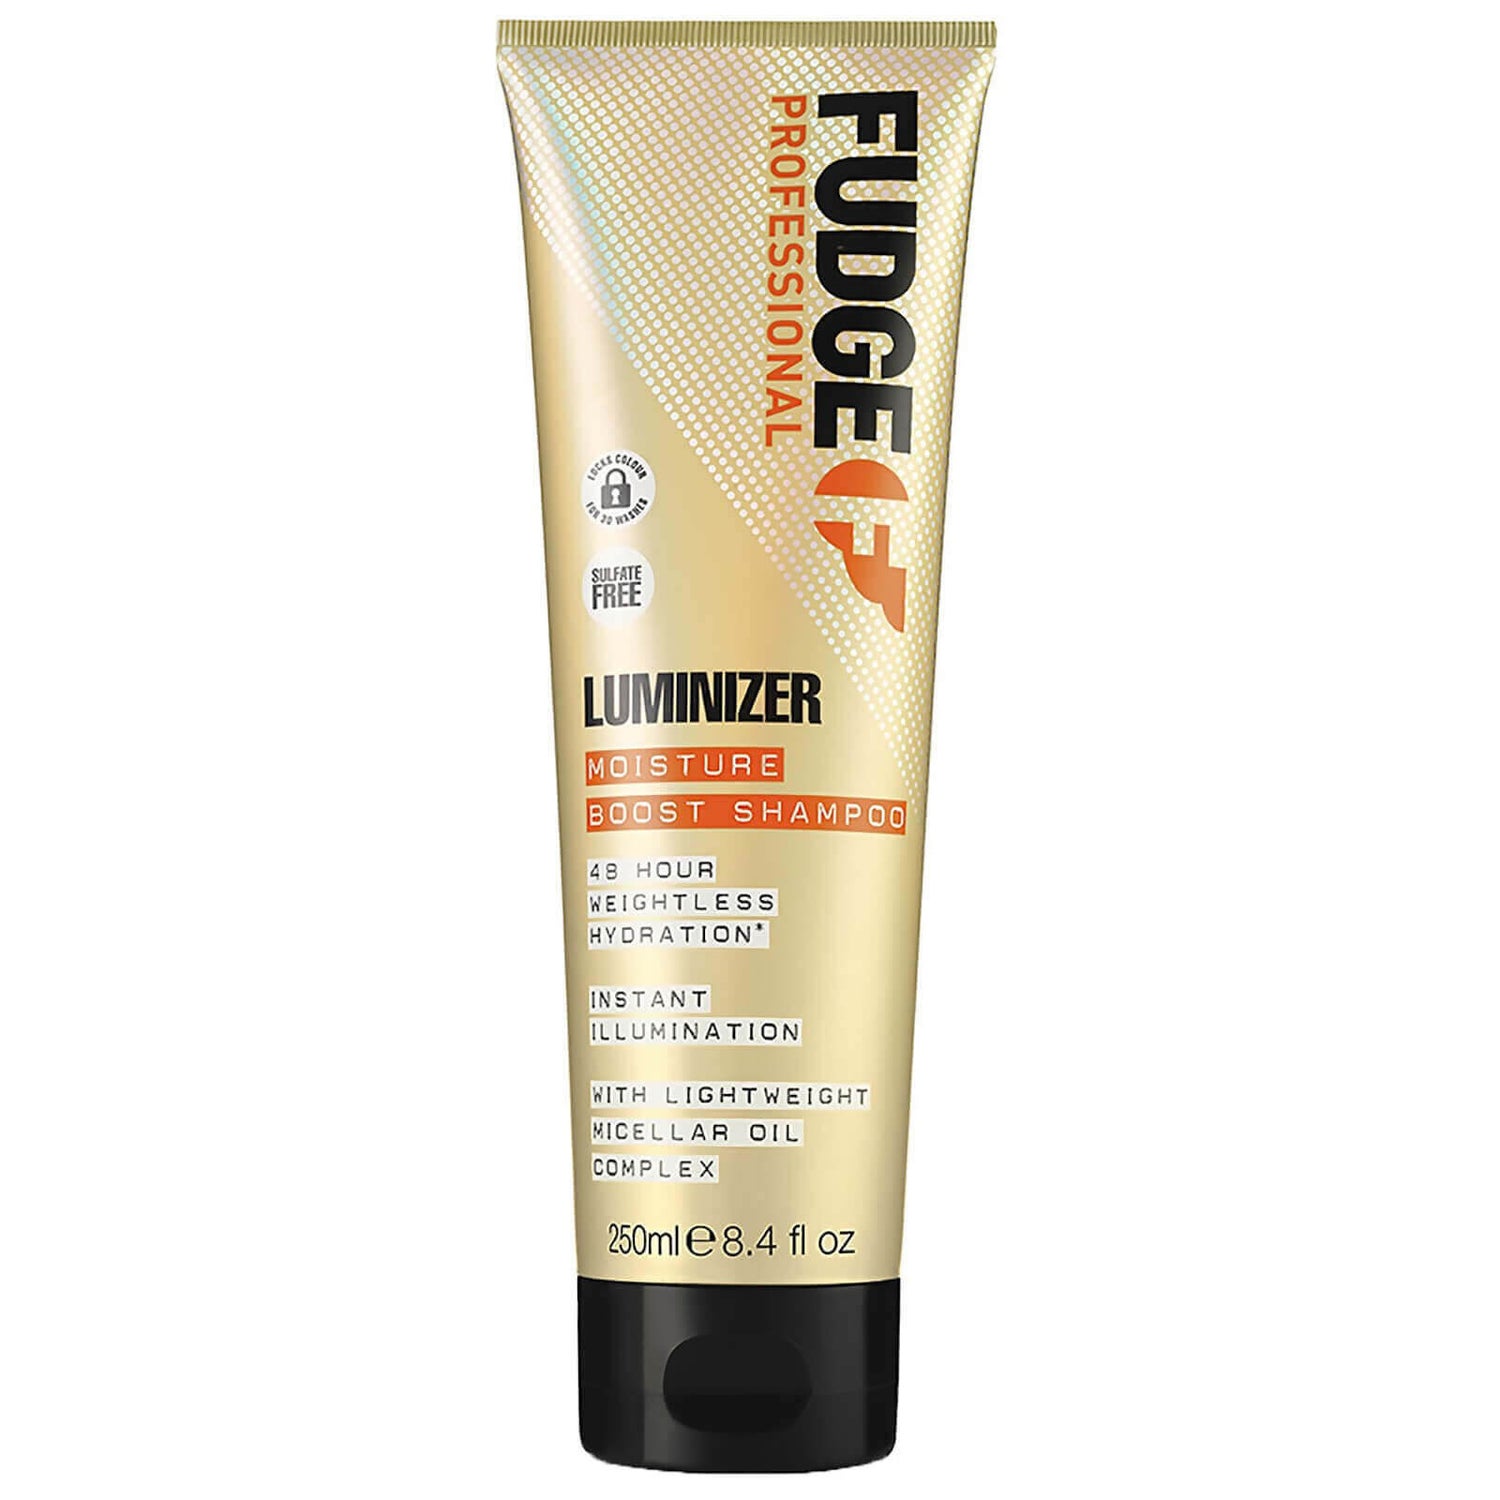 Shampoo Luminiser da Fudge 250 ml